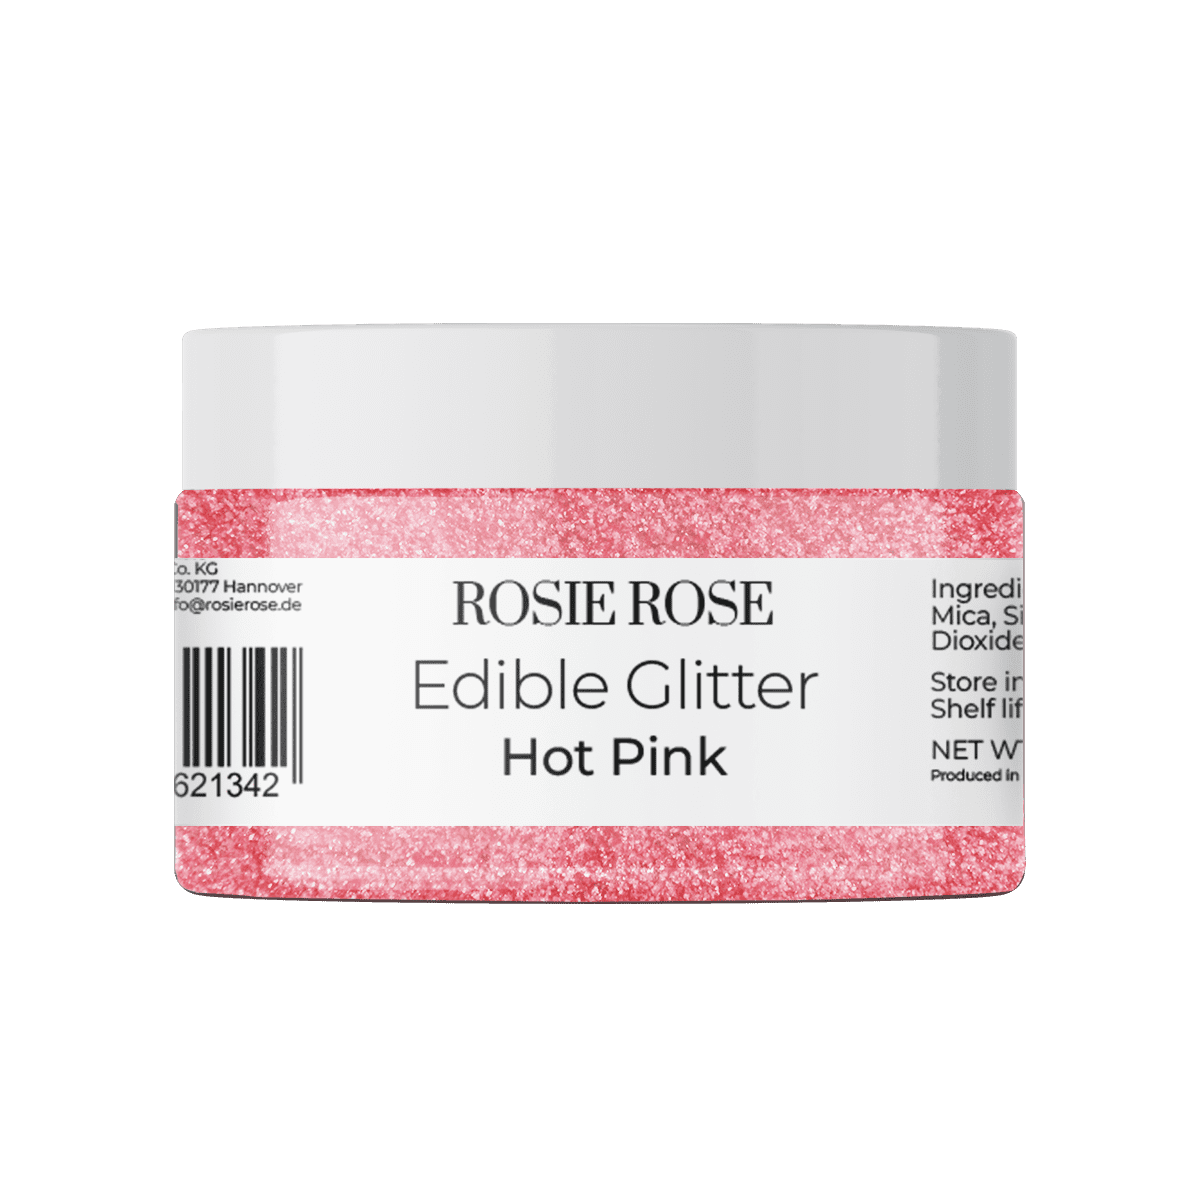 Unser essbares Glitter in Hot Pink ohne E171 bringt Ihre Backwerke zum Strahlen in der Farbe Pink. Verleihen Sie Ihren Desserts einen pinken Glanz und beeindrucken Sie Ihre Gäste. Entdecken Sie bei ROSIE ROSE eine vielfältige Auswahl an essbaren Blumen und Toppings für Ihre Tortendekorationen.